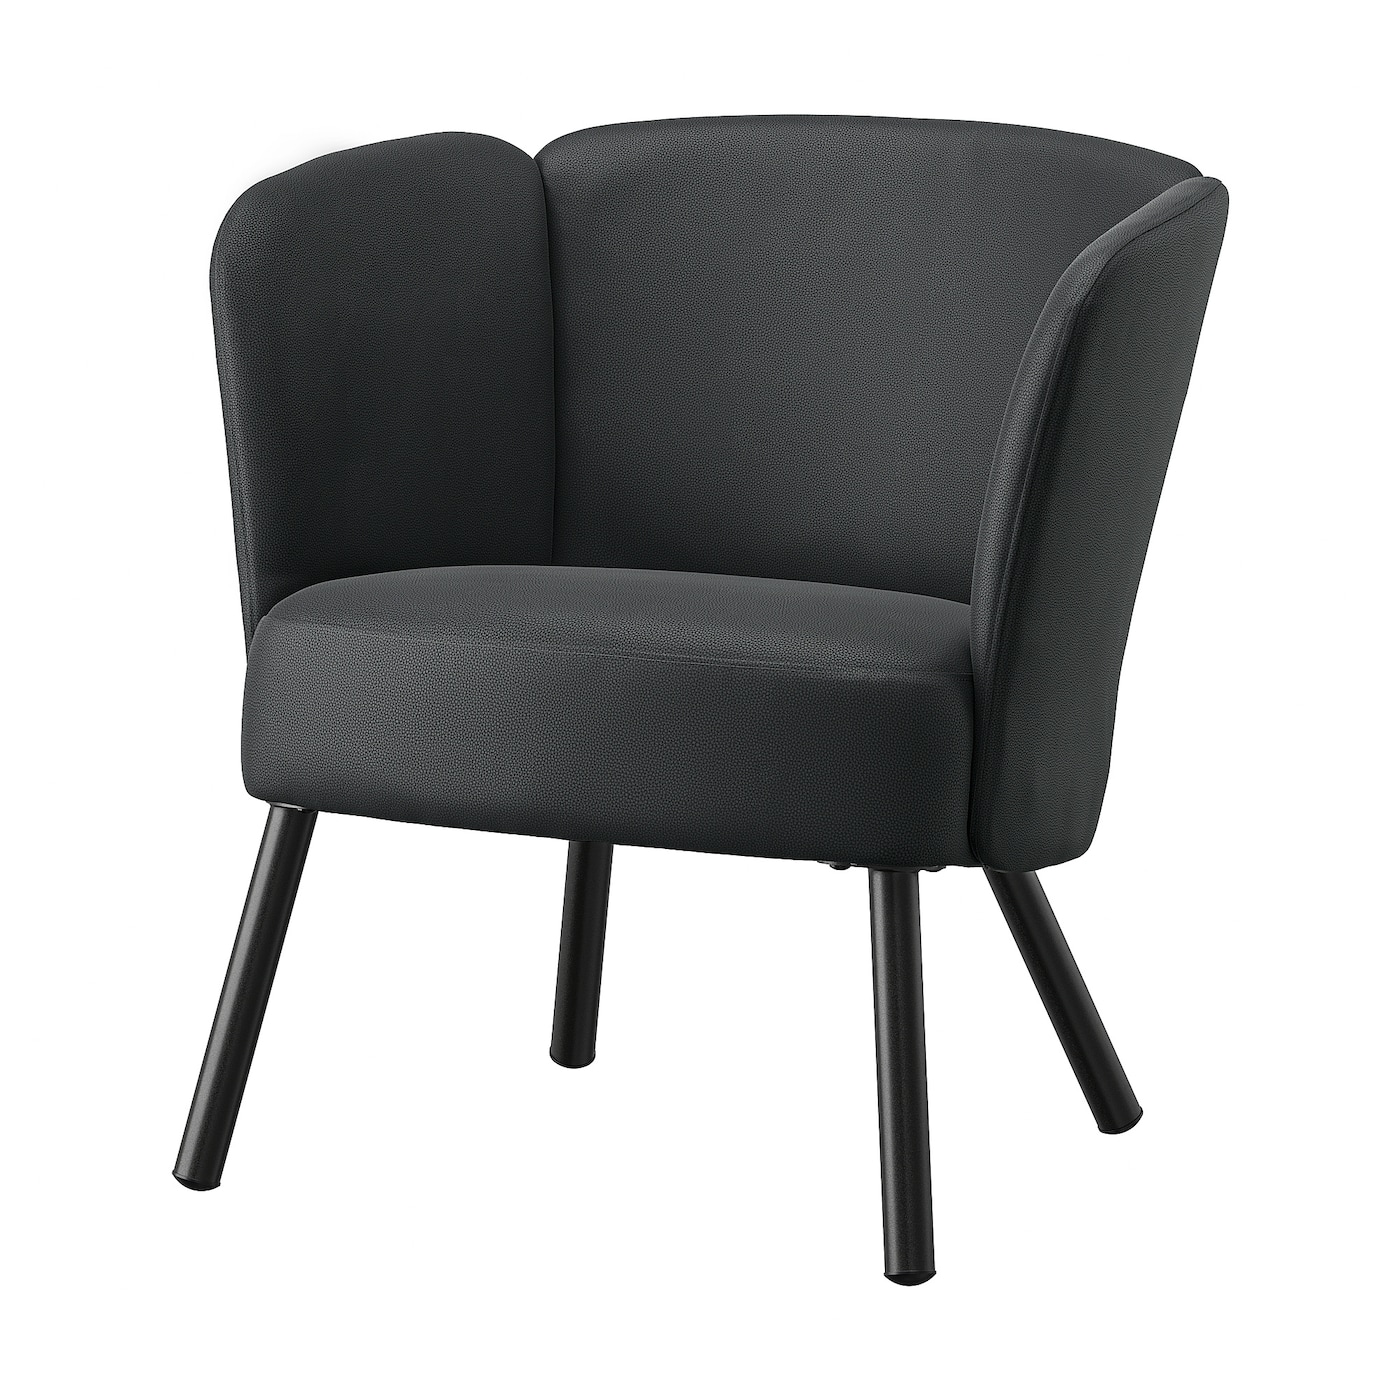 ХЕРРОКРА Кресло, Скулста черный HERRÅKRA IKEA кресло макси зеленый фанера